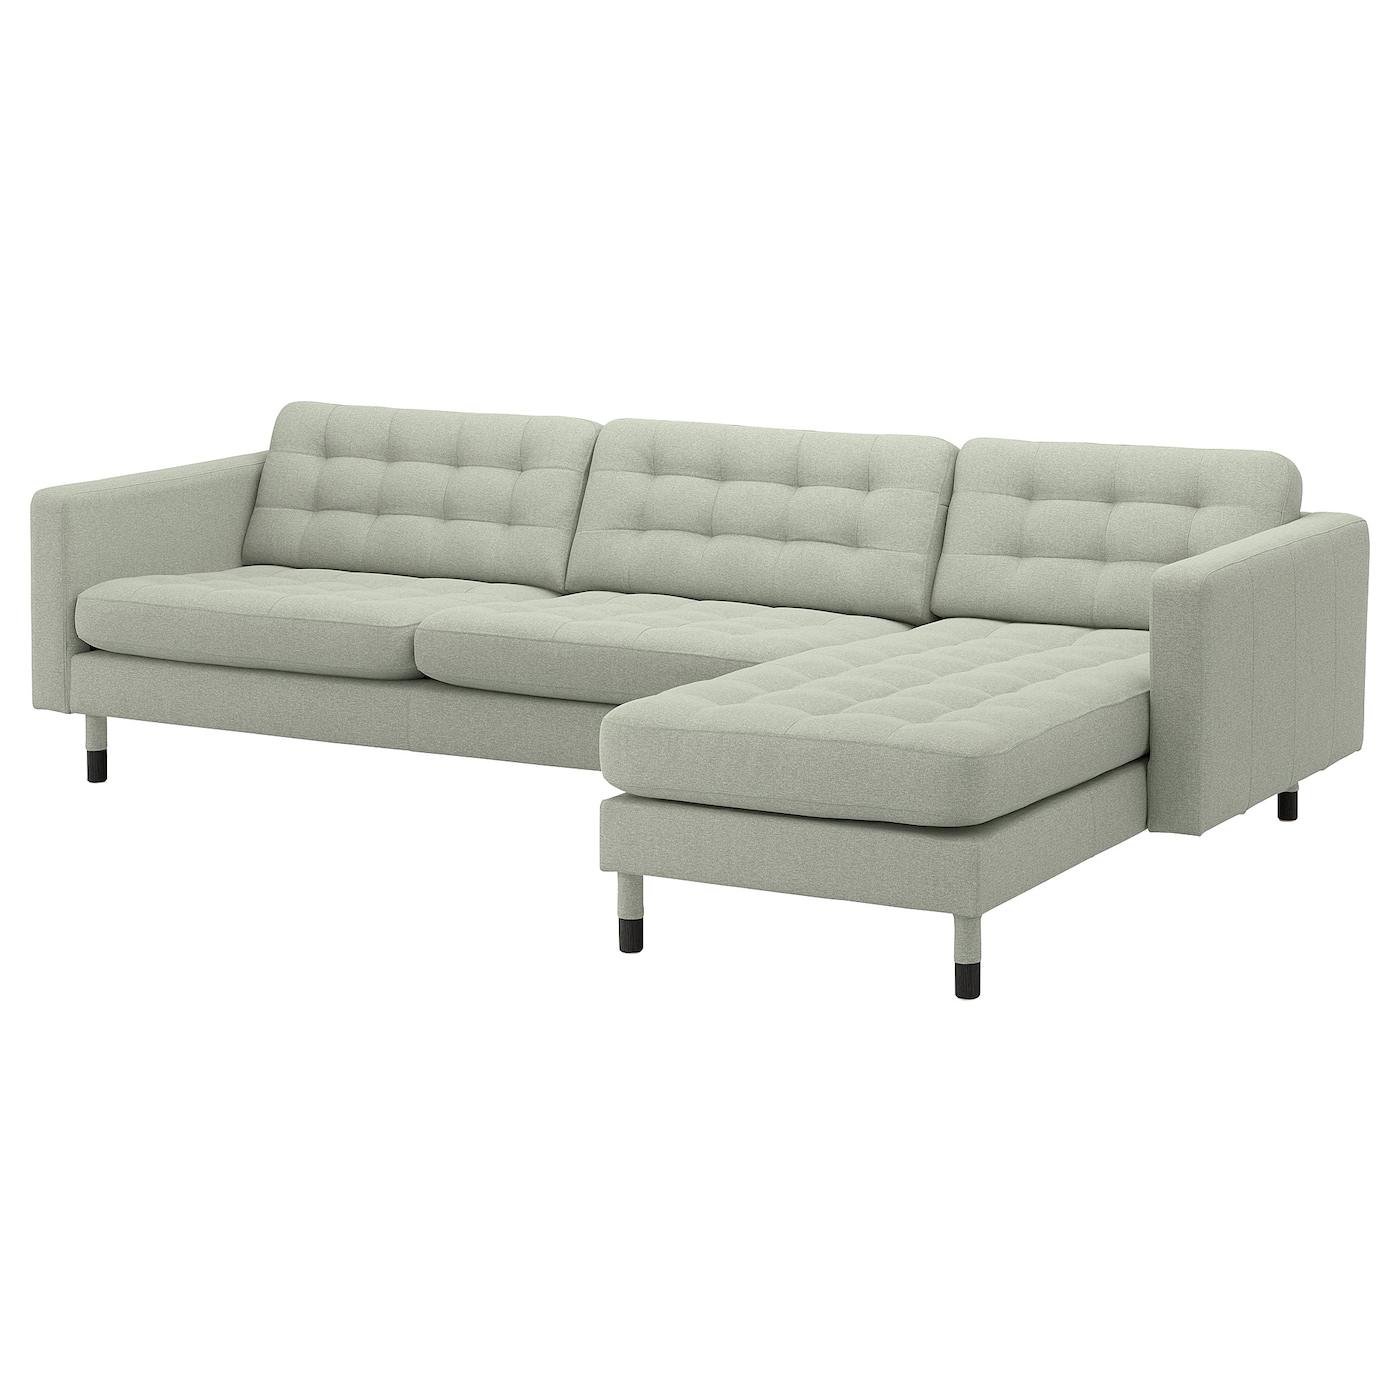 4-местный диван с шезлонгом - IKEA LANDSKRONA, 89x280см, светло-серый, ЛАНДСКРУНА ИКЕА